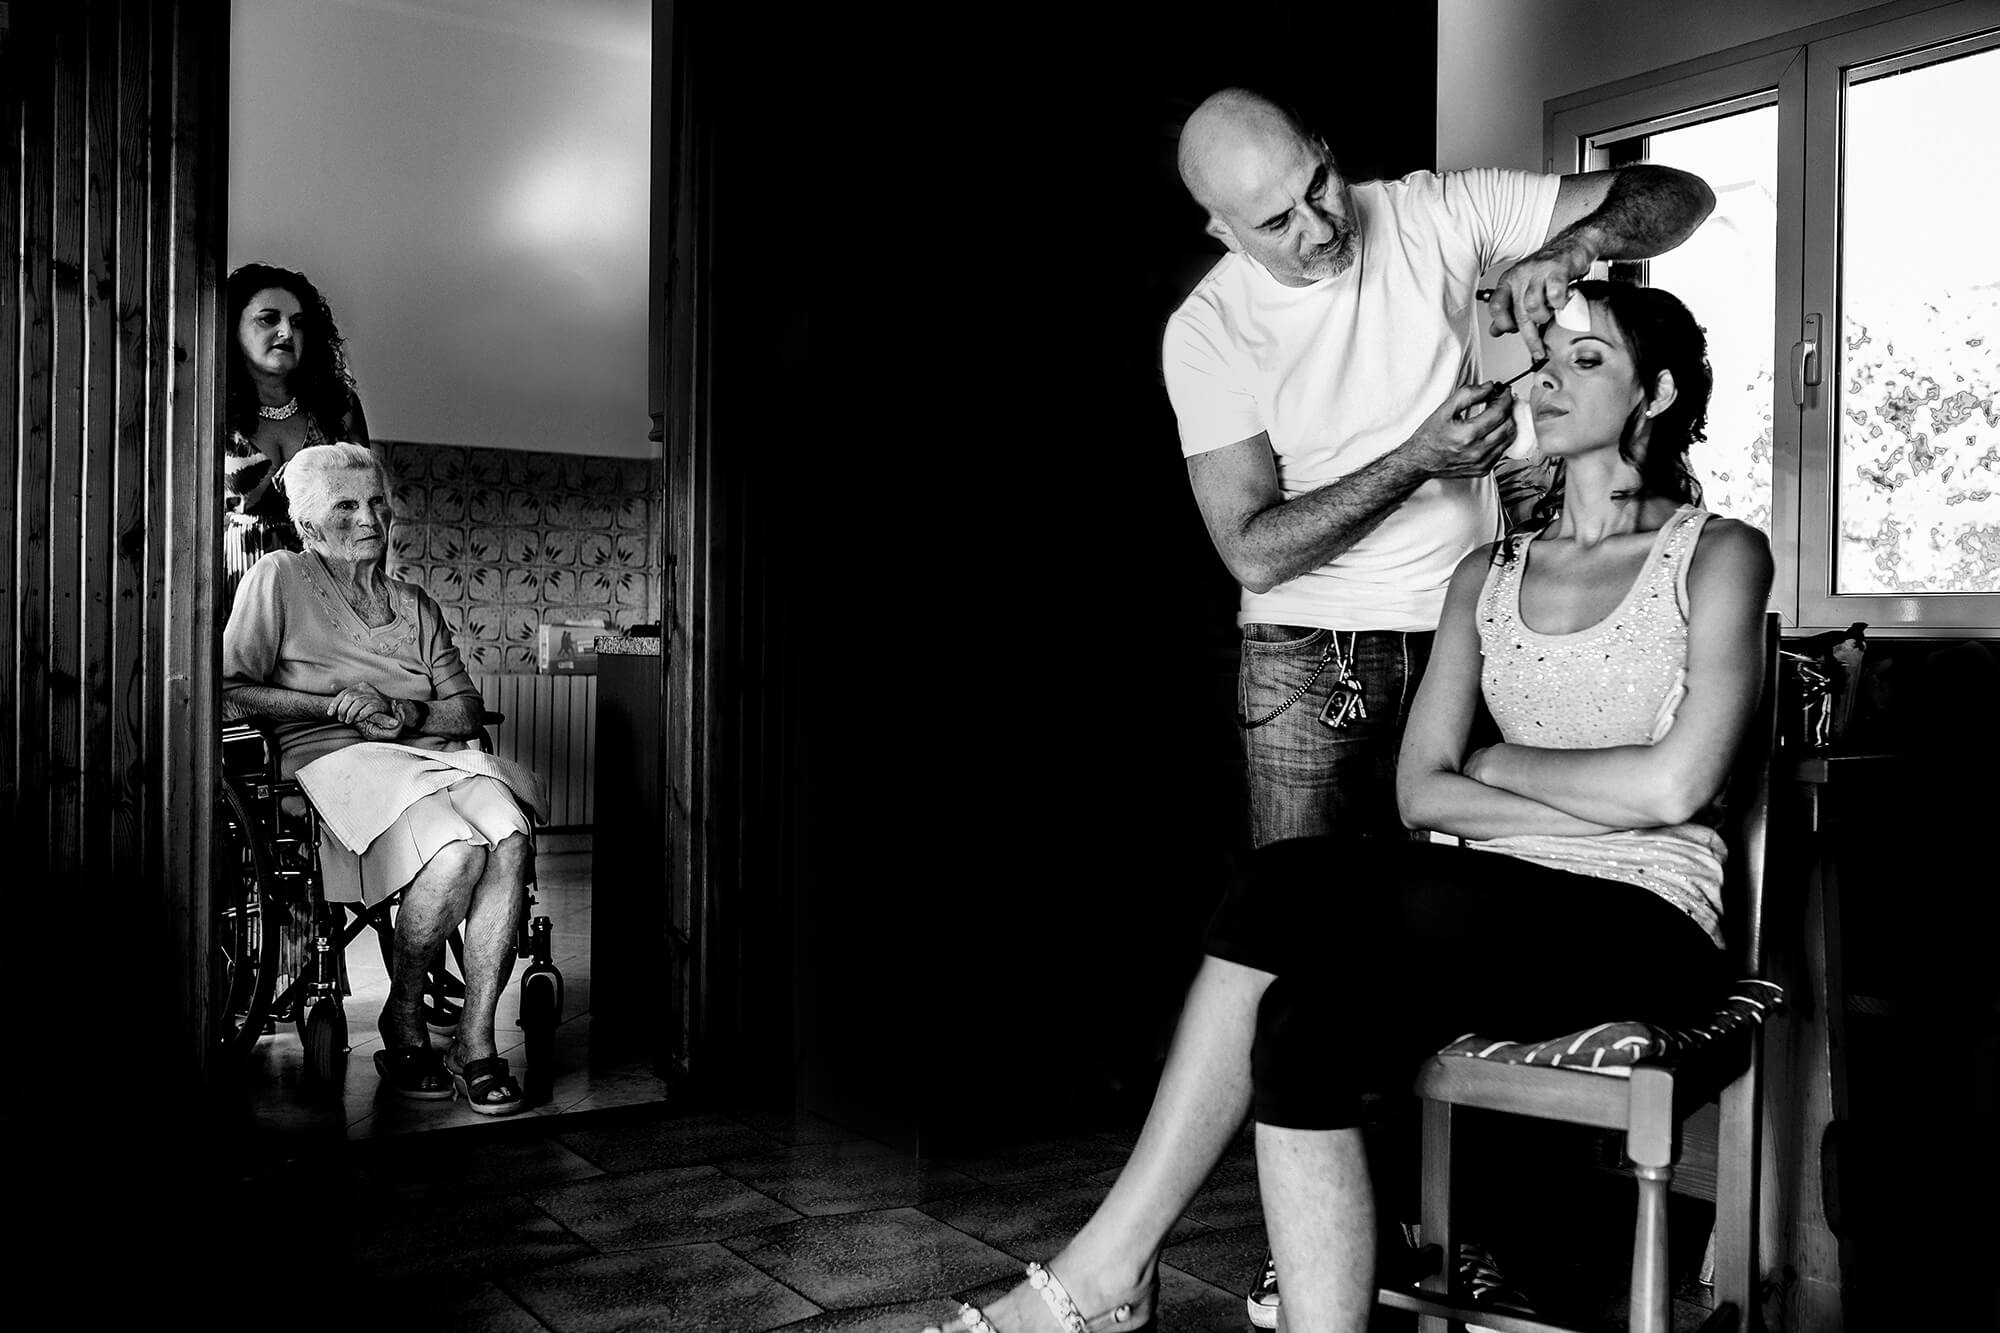 Un matrimonio a Sanremo, questa foto è della preparazione della sposa con la nonna che la guarda prepararsi, ci piace fotografare in maniera spontanea queste situazioni.